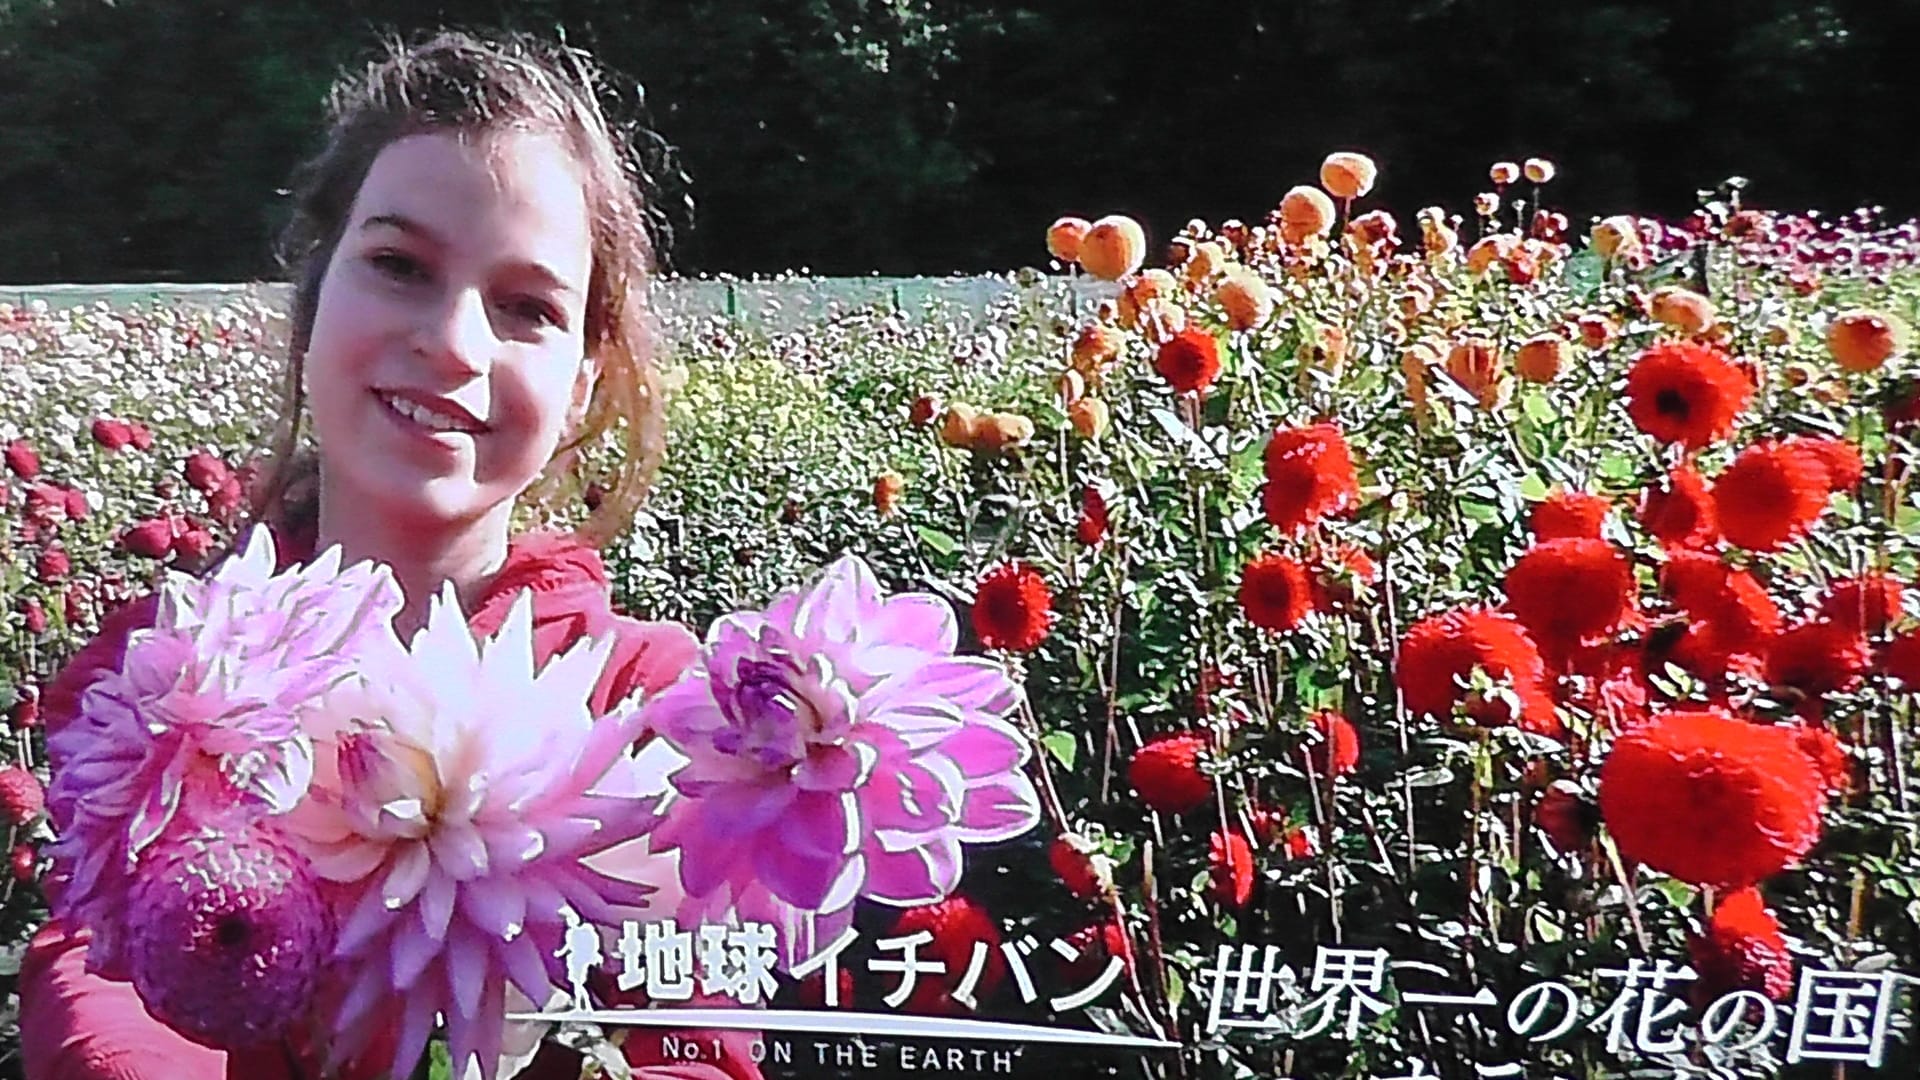 世界一花の国オランダ ー花文化の高さに敬服 京都で定年後生活